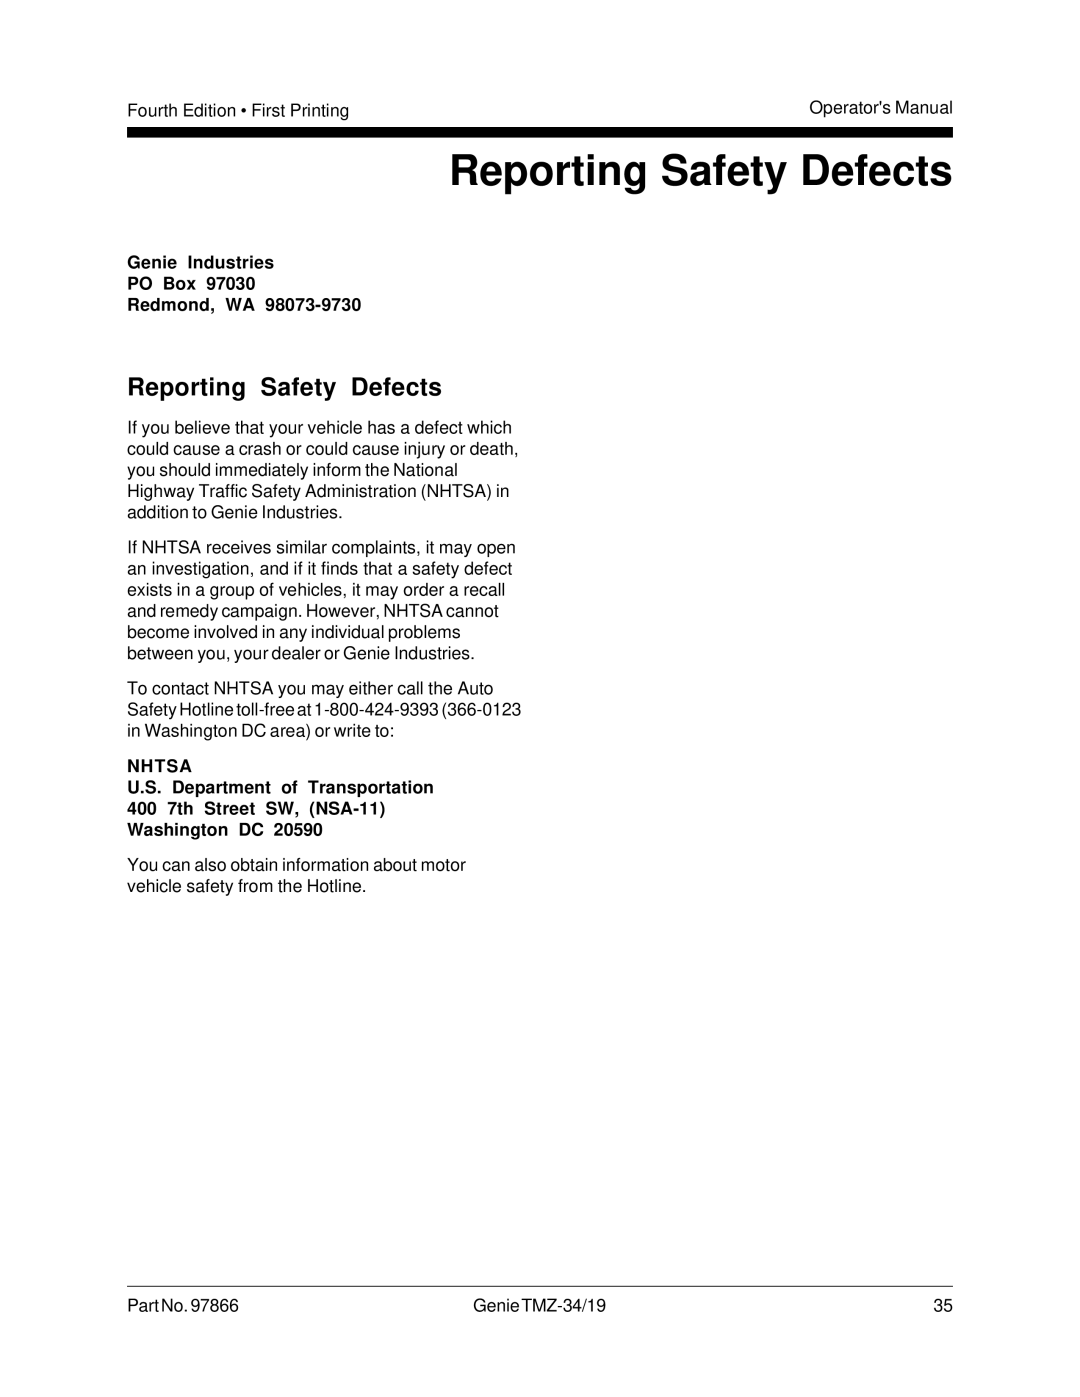 Genie TMZ-34, TMZ-19 manual Reporting Safety Defects, Genie Industries PO Box Redmond, WA 